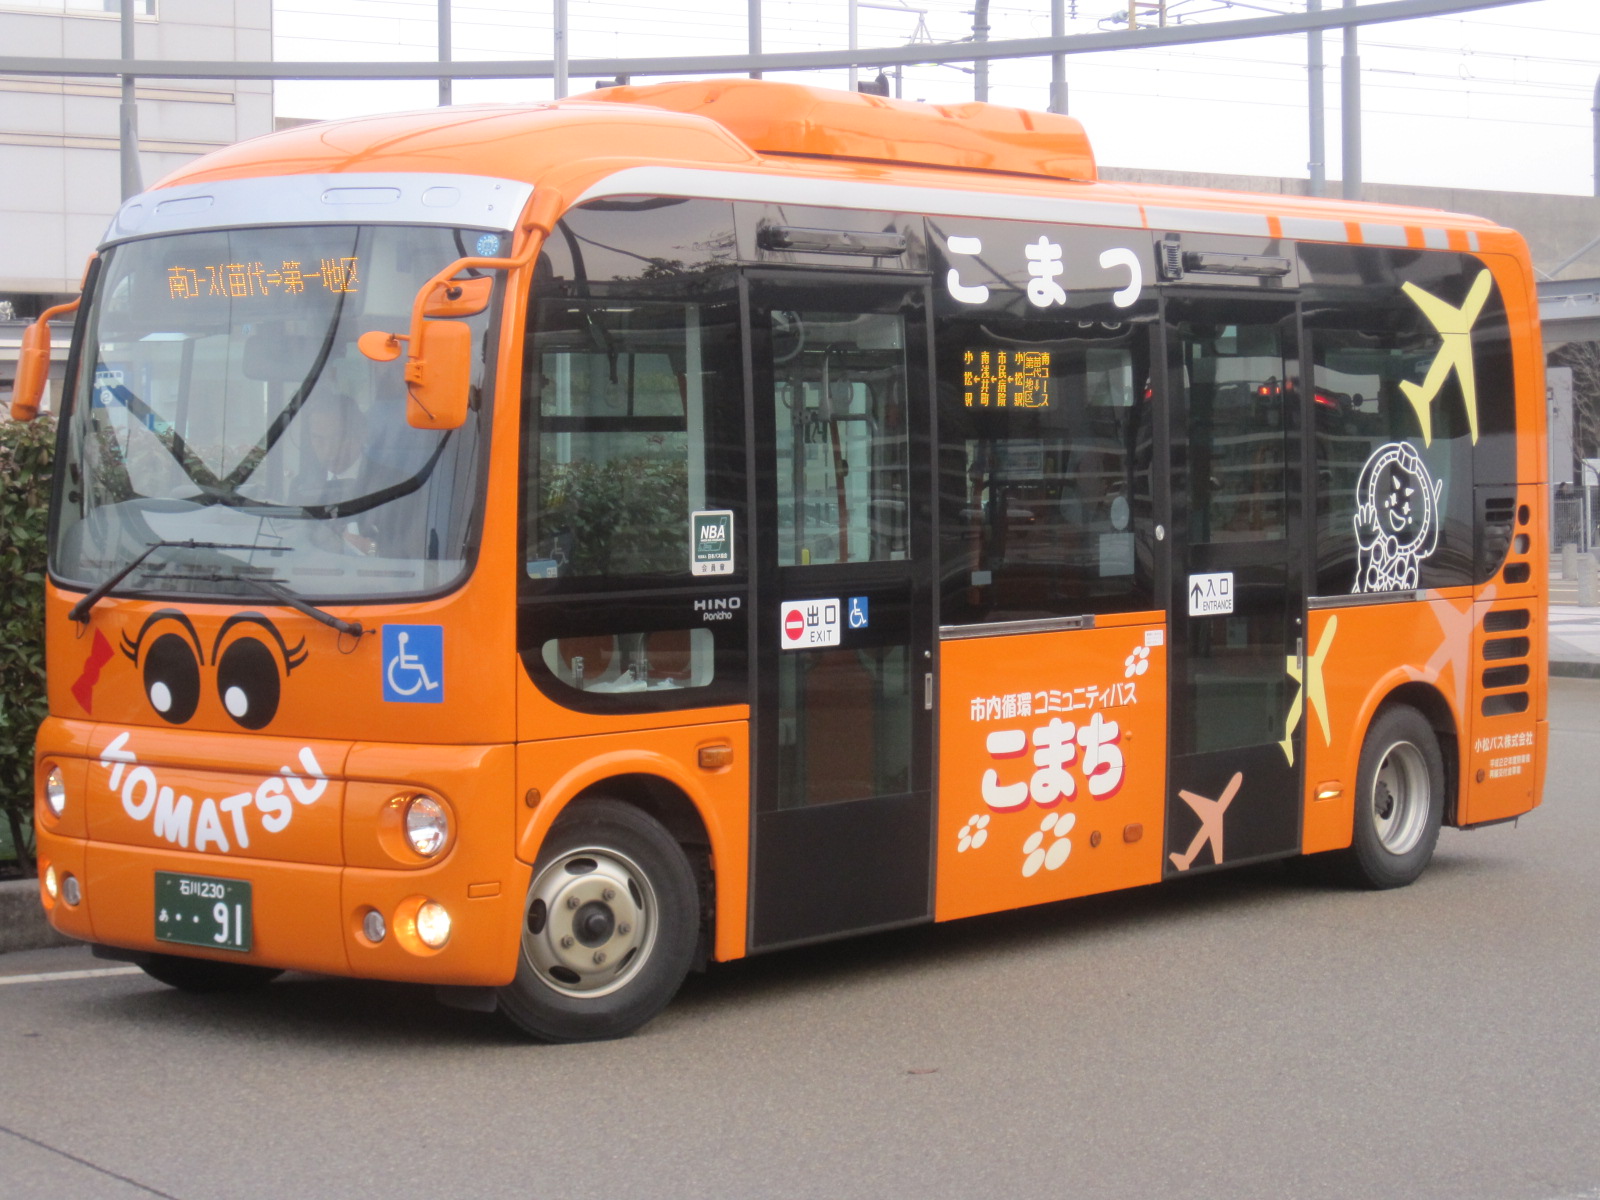 Оранжевый автобус пермь экскурсии. Оранжевый автобус. Yutong автобус оранжевый. Школьные автобусы с оранжевым маячком. Автобус апельсин.